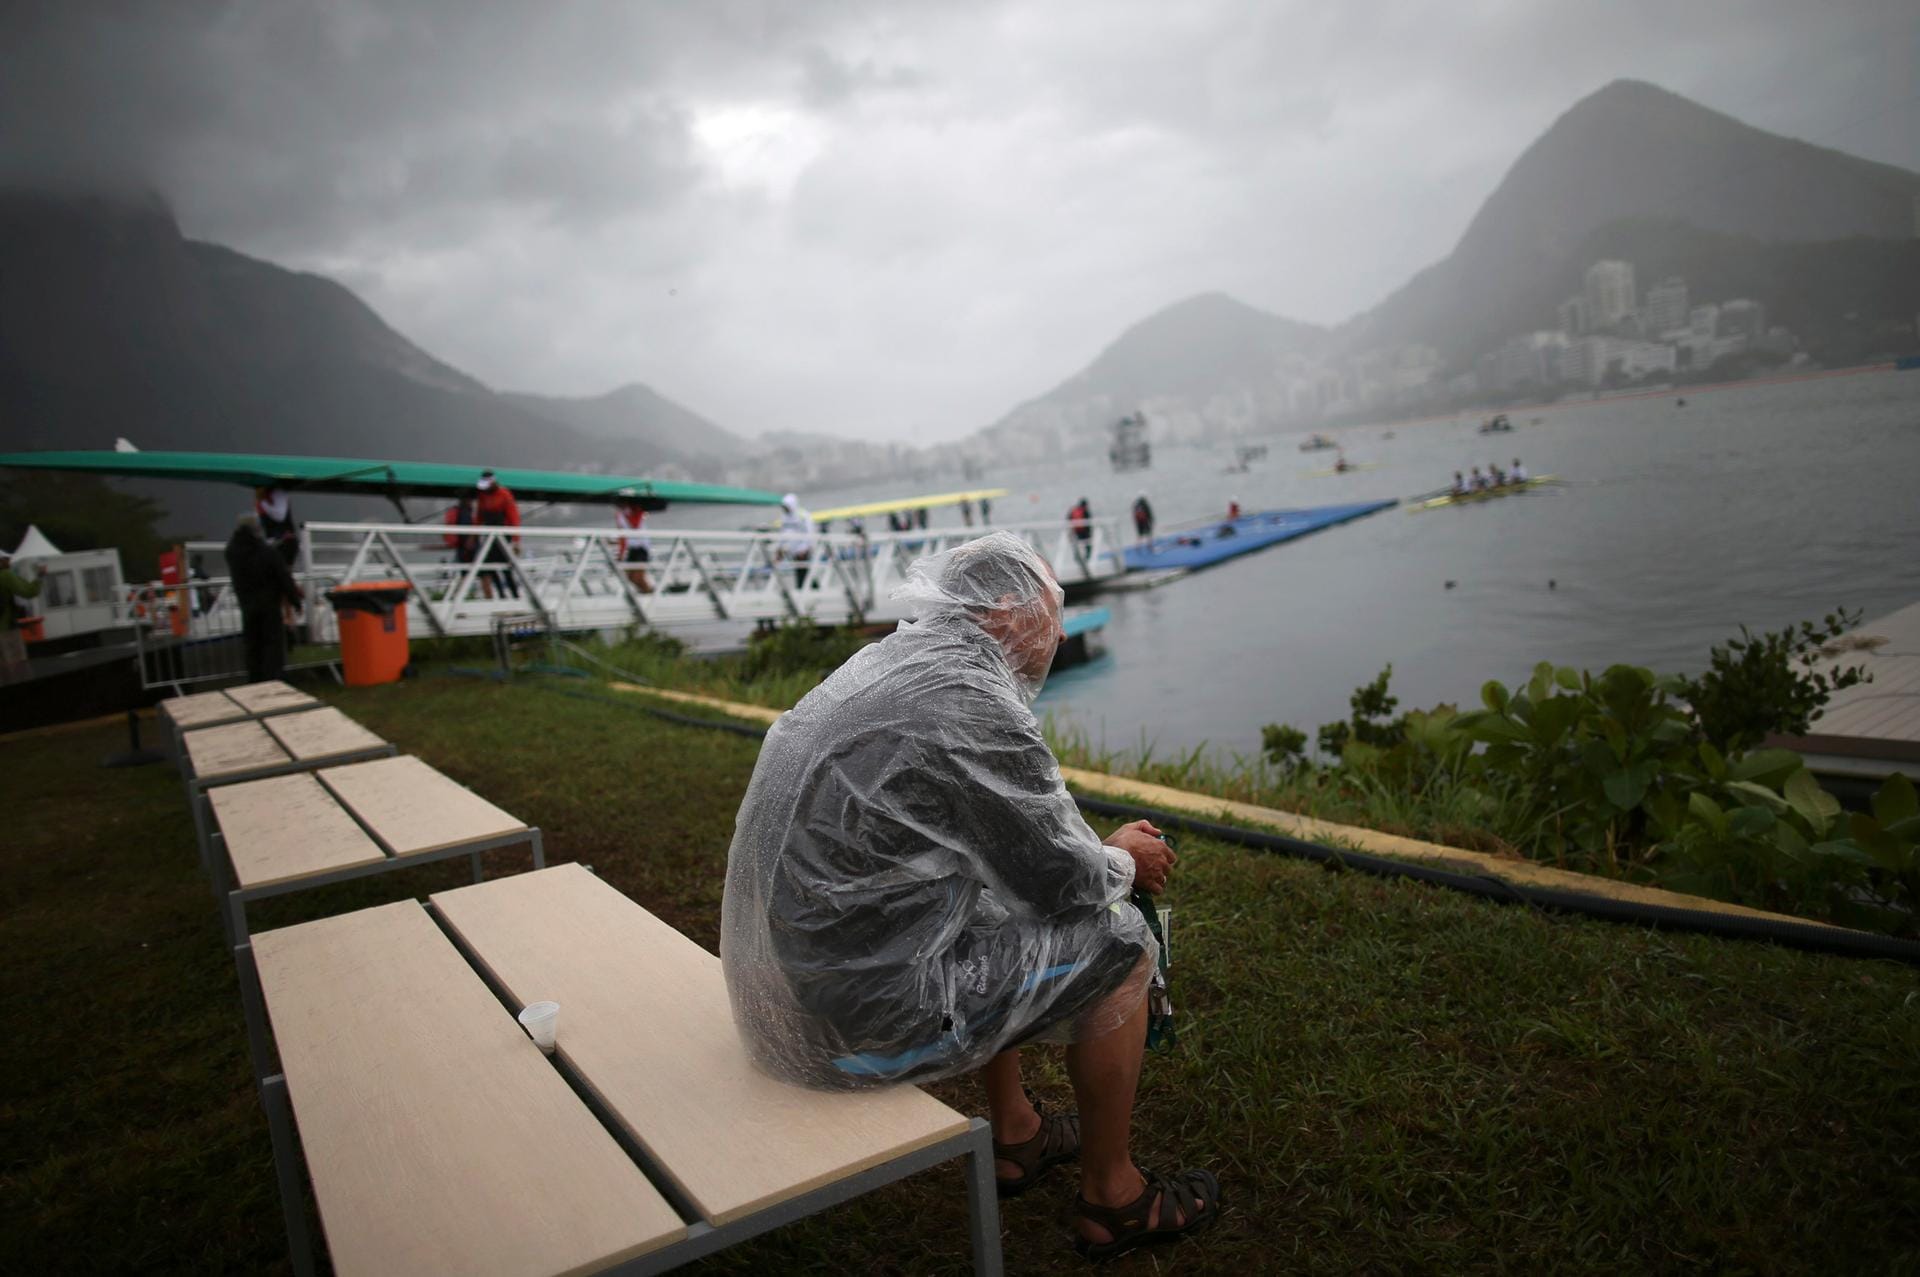 Trübe Aussichten: Am fünften Wettkampftag in Rio spielte das Wetter bei den Olympischen Spielen nicht mit. Es regnete und war windig, was sich auf einige Wettbewerbe auswirkte.